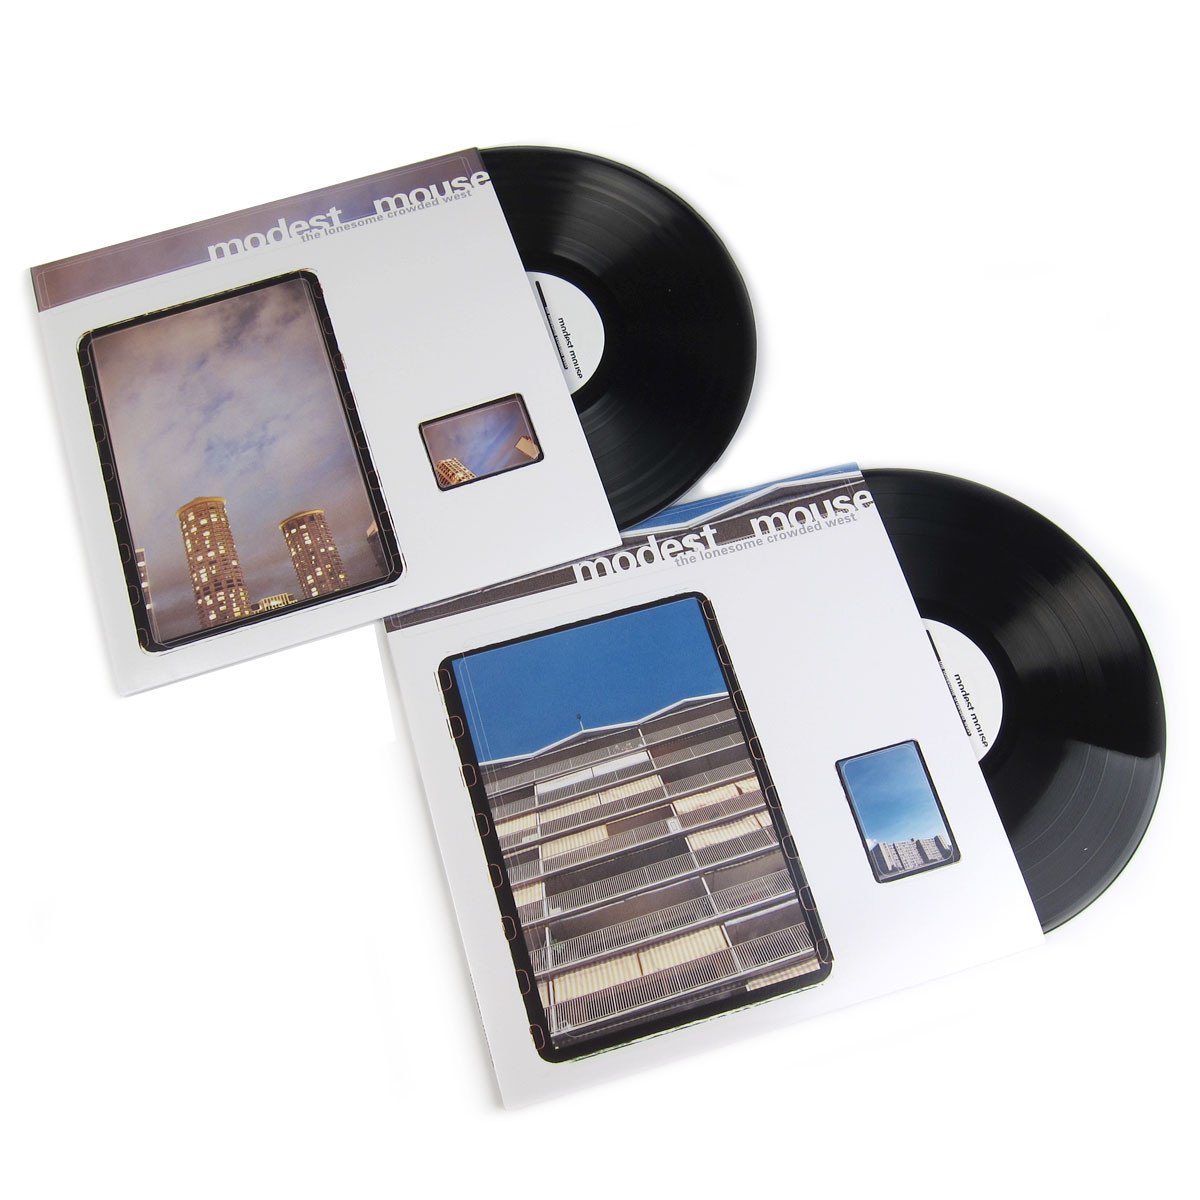 Modest Mouse: Vinyl LP Album Pack